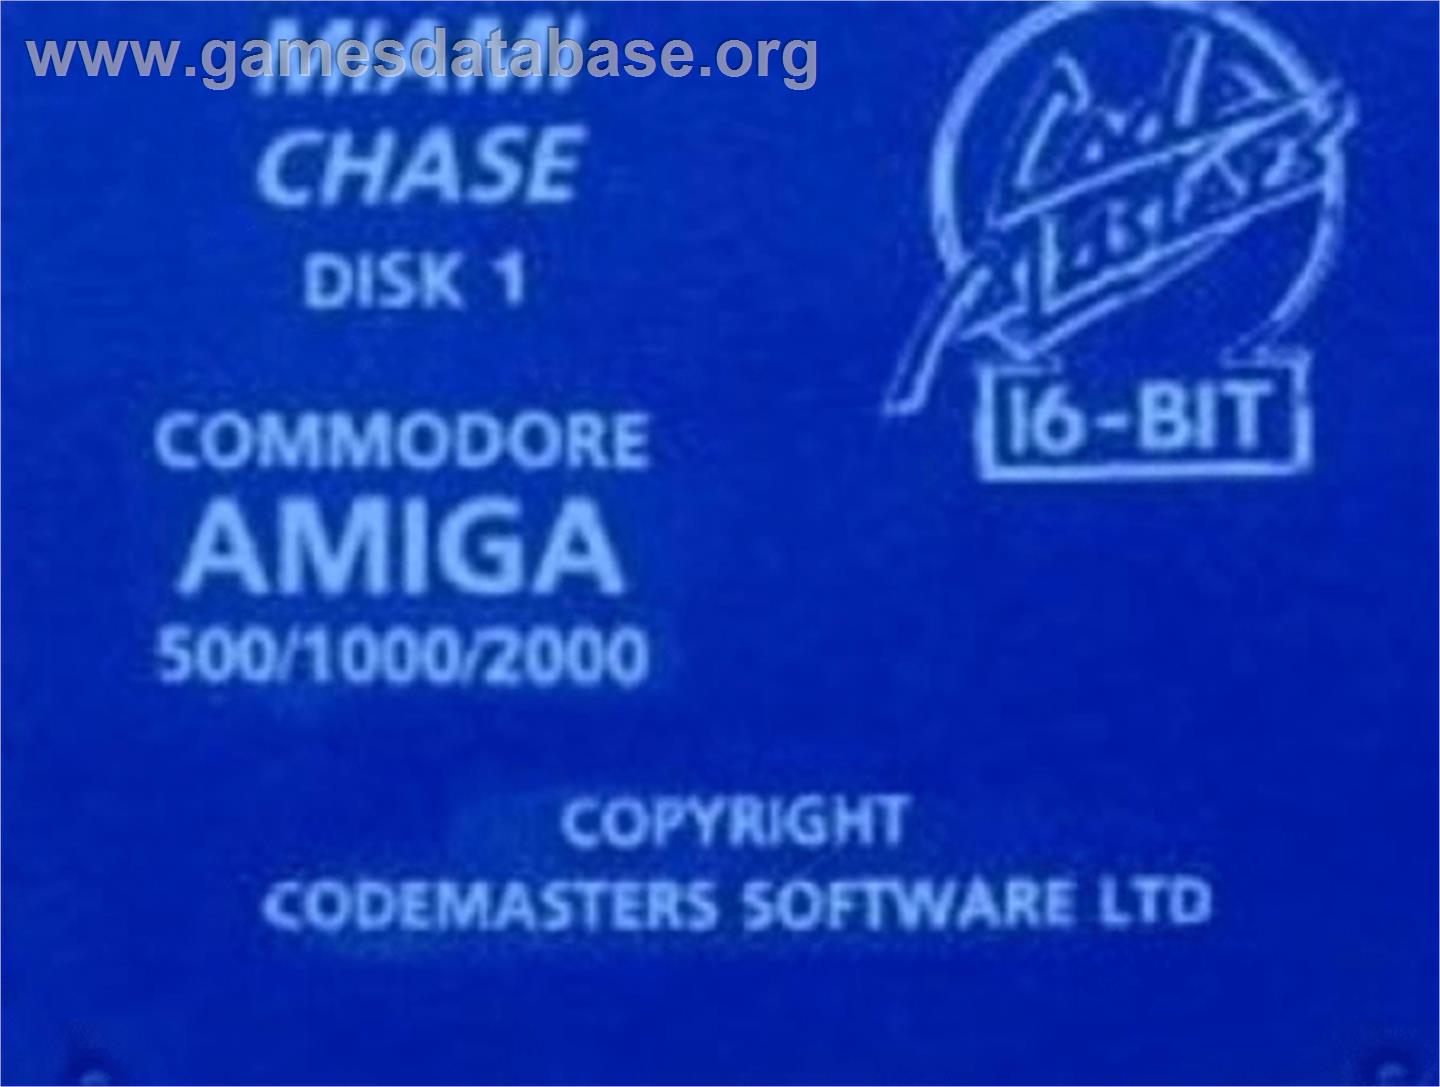 Miami Chase - Commodore Amiga - Artwork - Cartridge Top